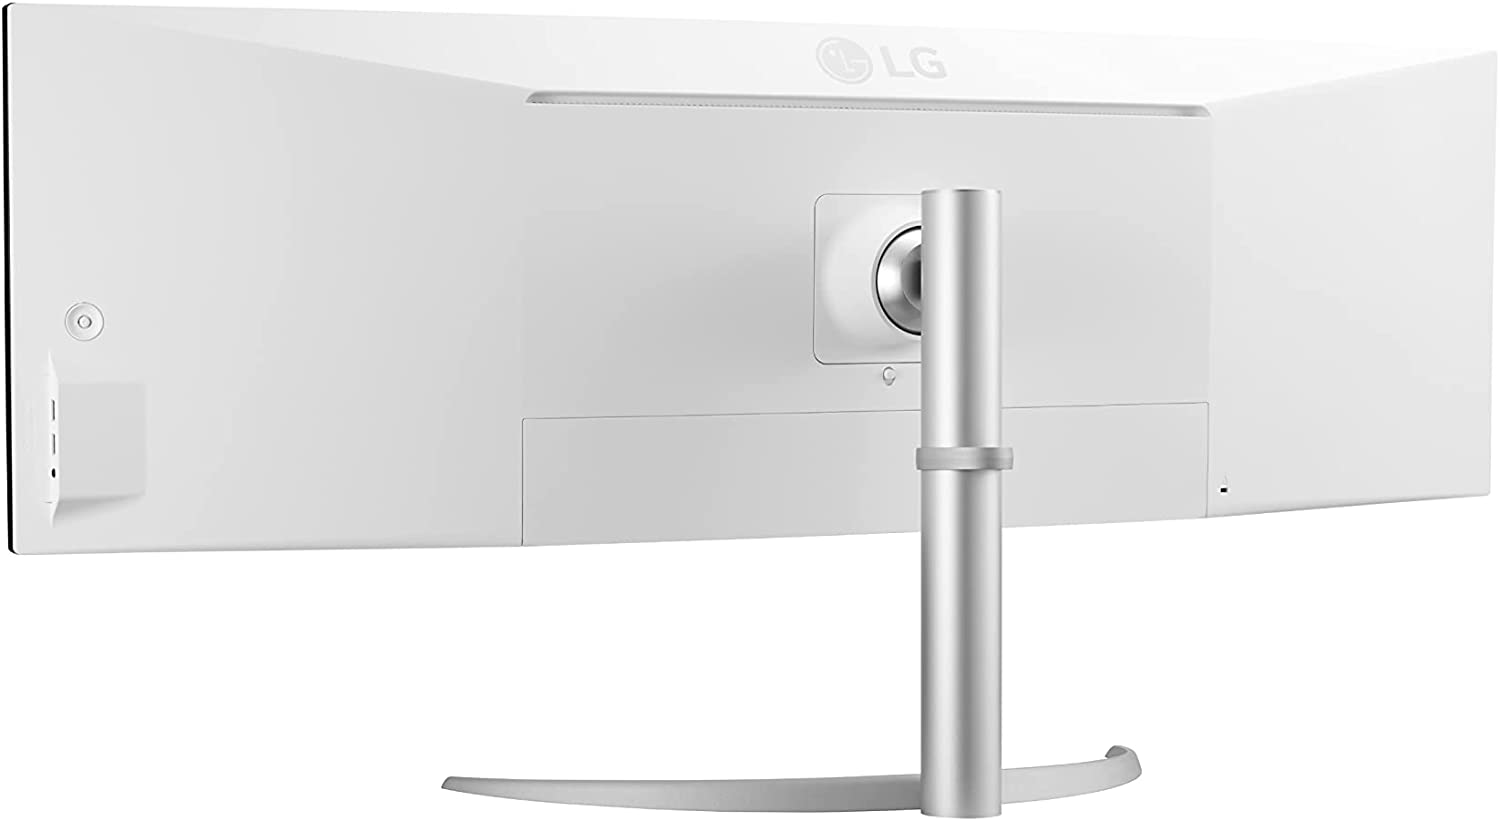 LG 49WQ95X-W - LED monitor - curved - 49" - HDR monitors